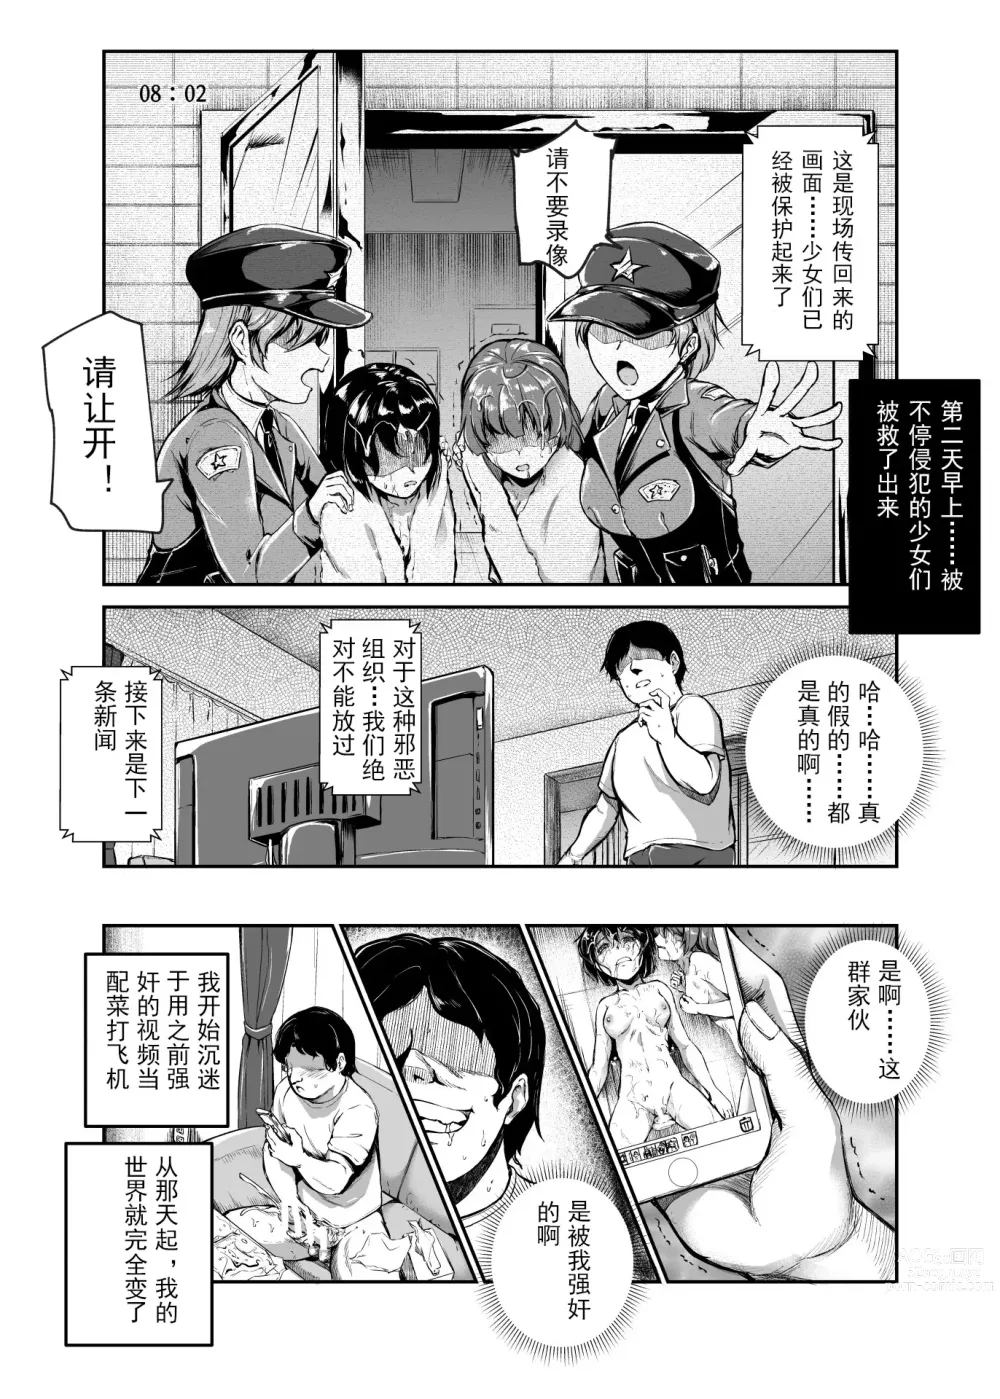 Page 11 of doujinshi 进入邪恶组织工作的话，就可以放肆享受女人性爱自助了吗?EX